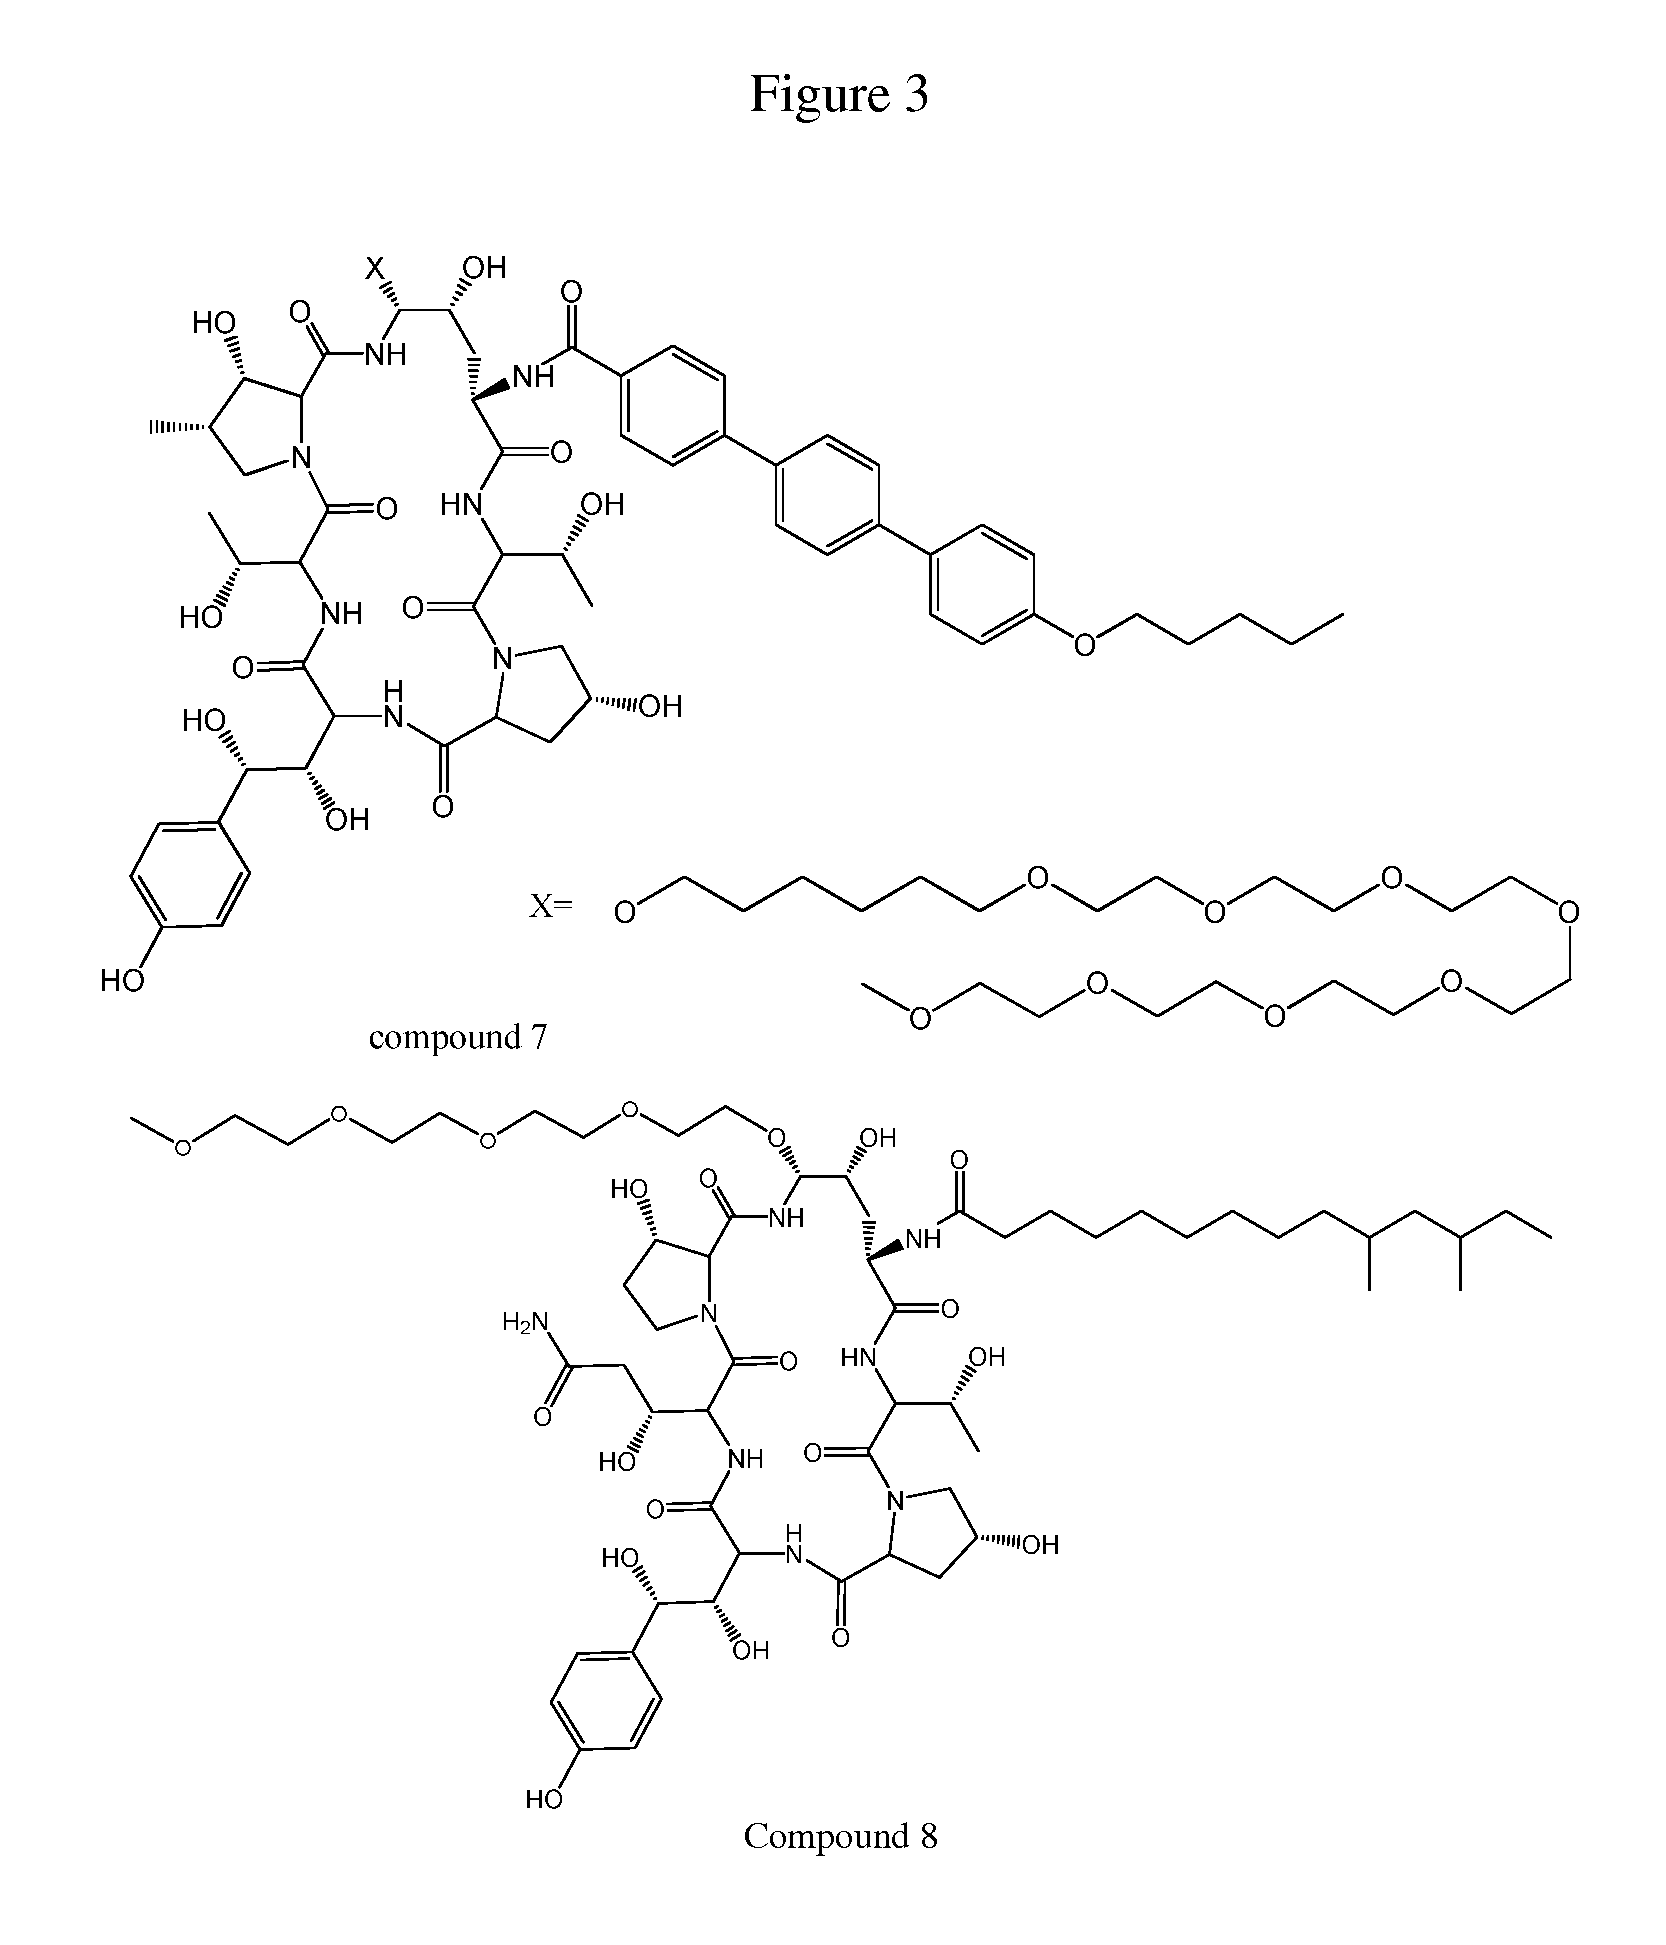 Dosing regimens for echinocandin class compounds